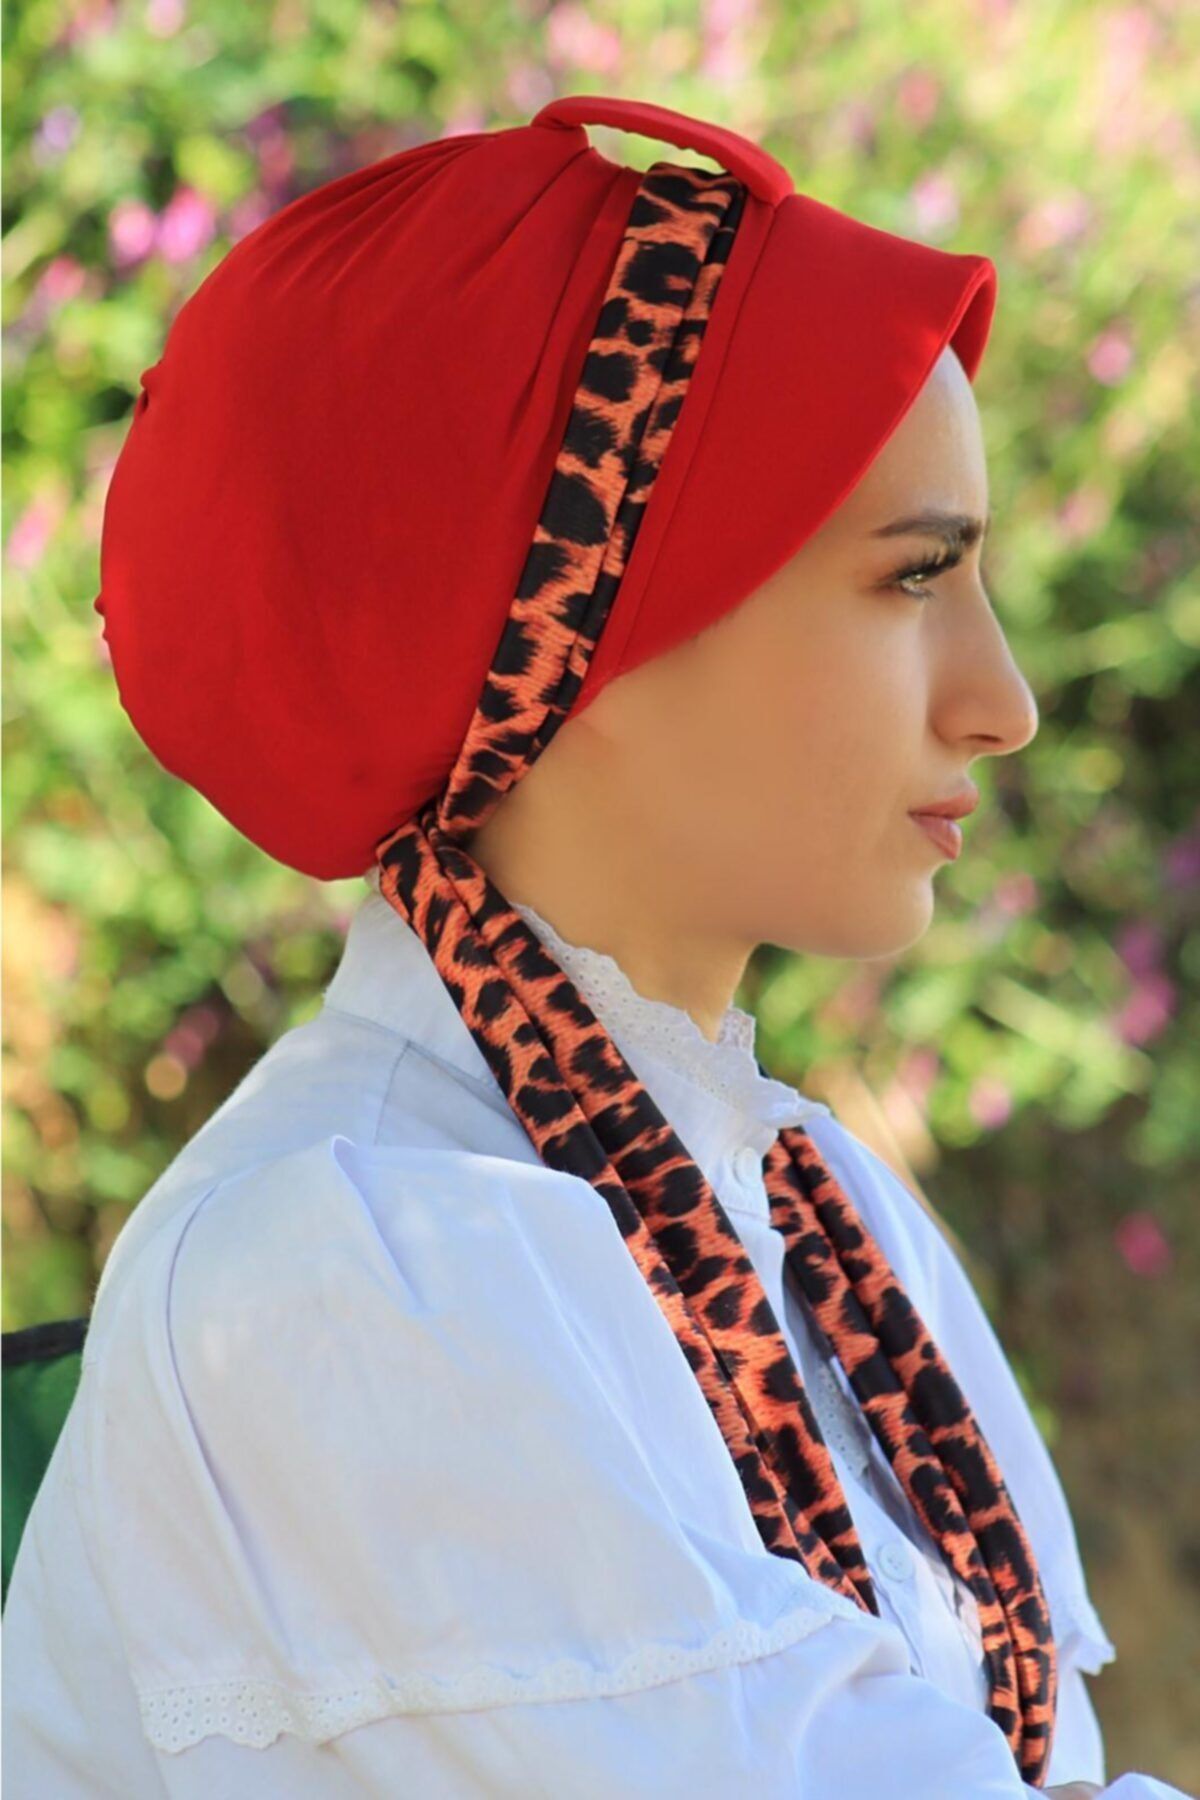 Atkılı Şapka Bone Kırmızı - Özel Tasarım- Yeni Model Tesettür Giyim